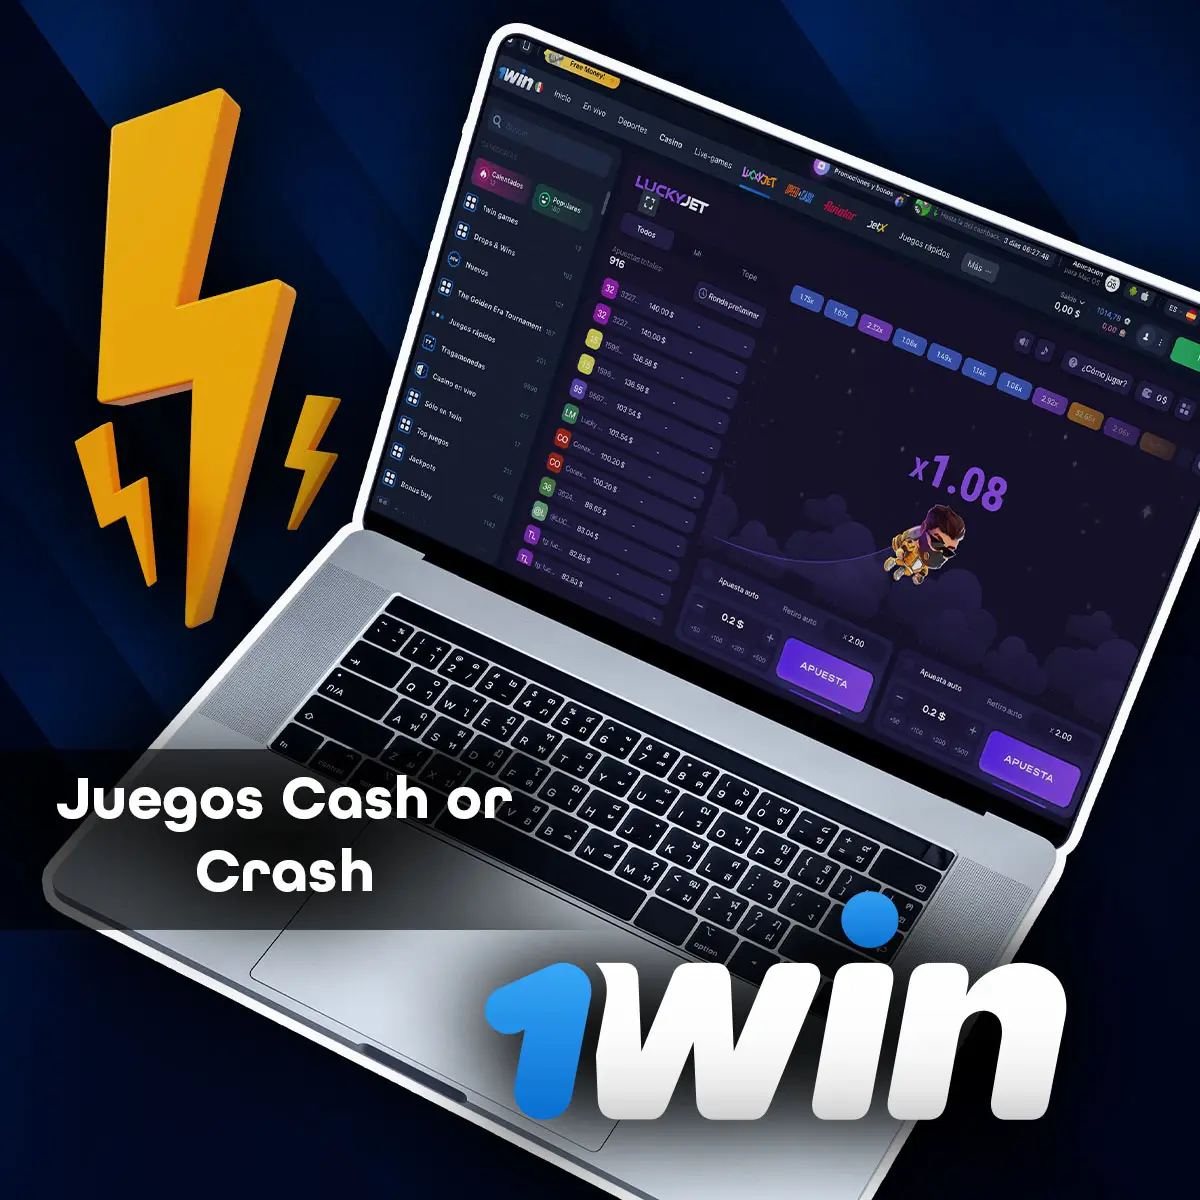 Cómo jugar a Juegos Crash en la aplicación móvil 1win